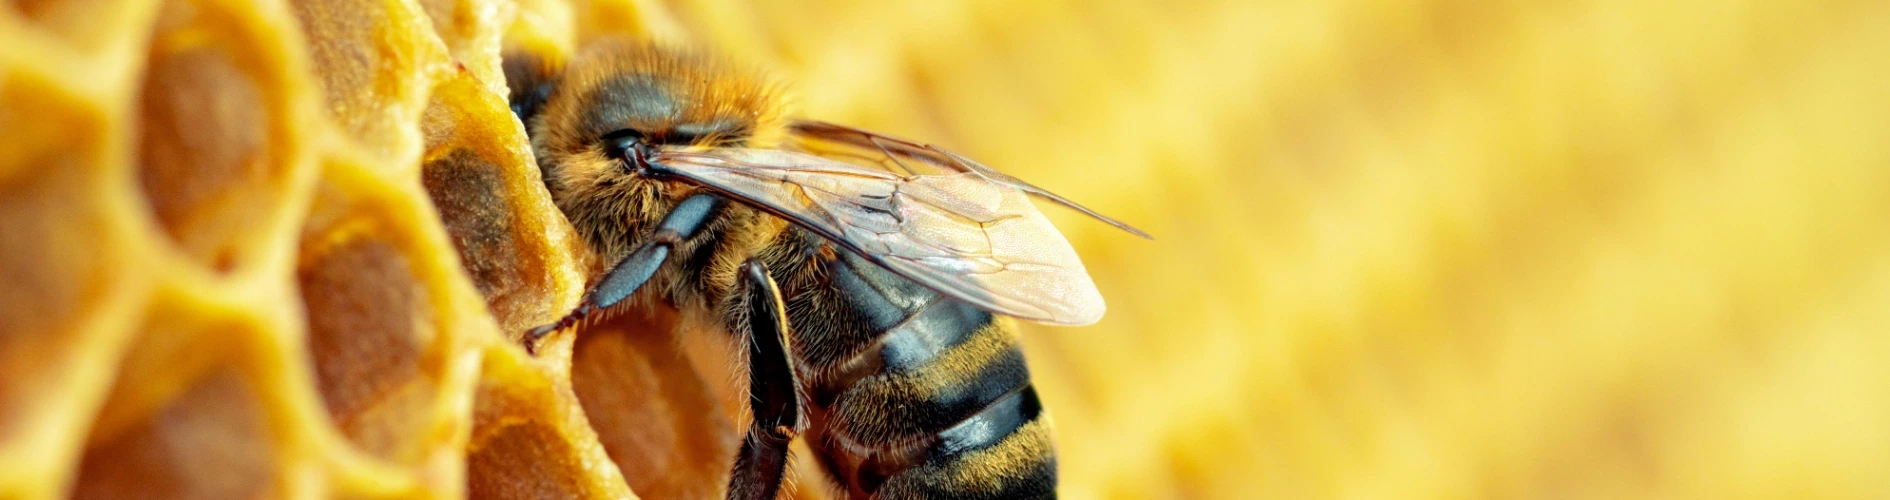 pszczoła na plastrze miodu